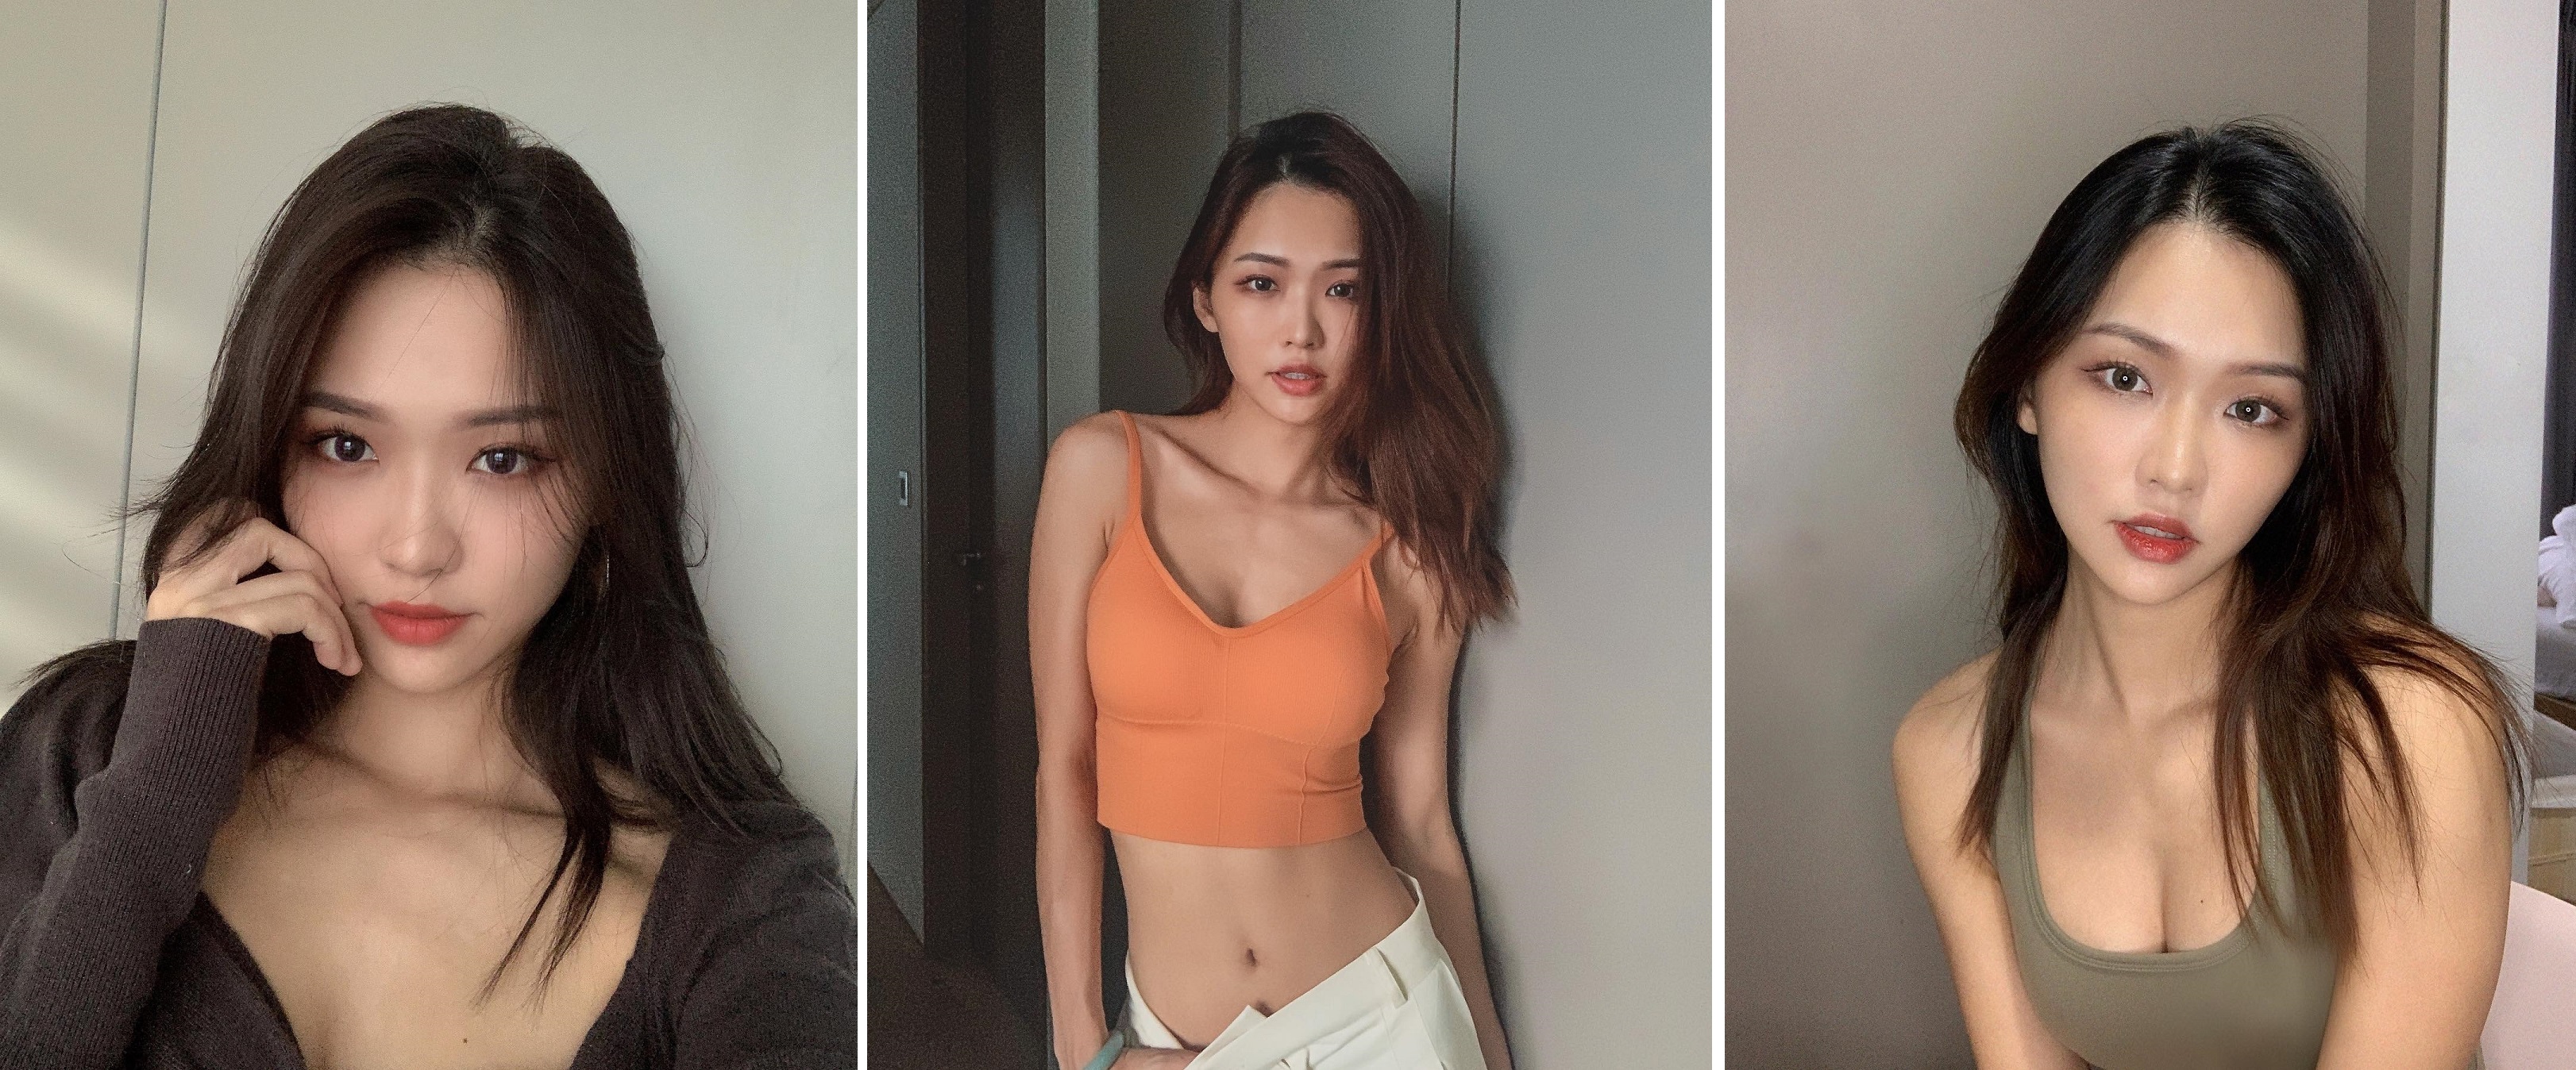 La modella Instagram di Singapore ha guadagnato 7,37 milioni di dollari in 10 giorni vendendo foto NFT